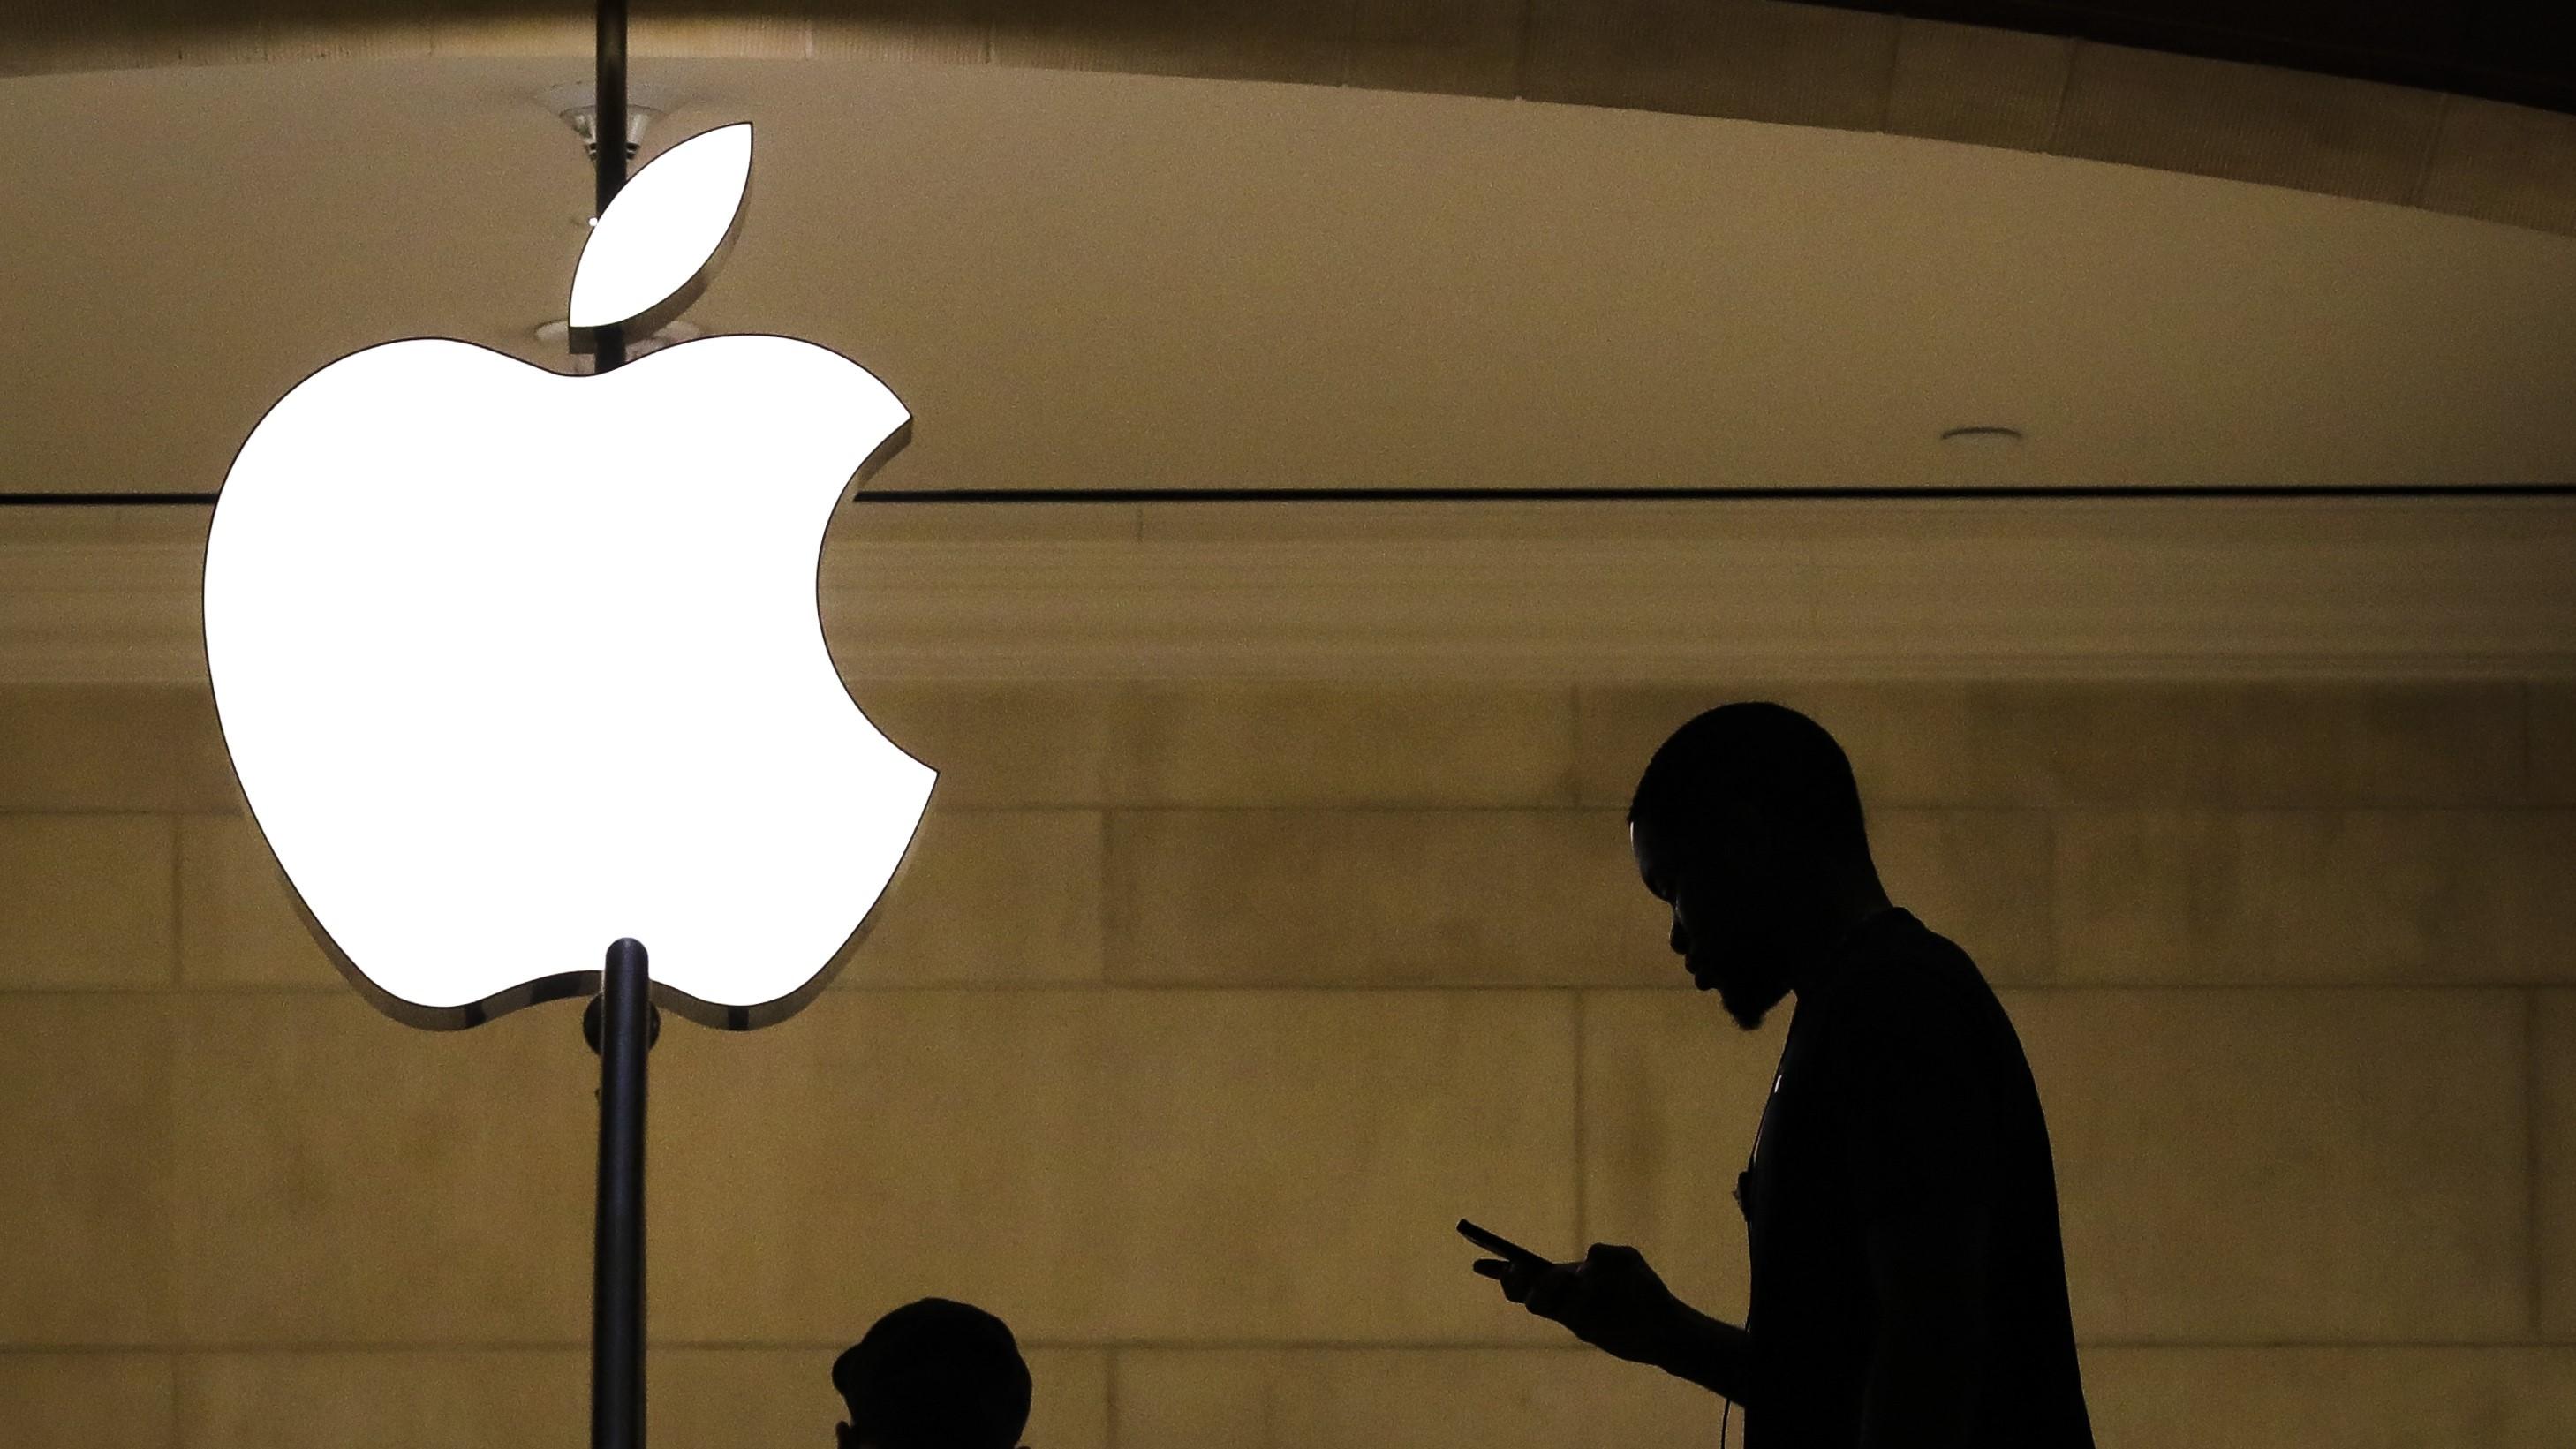 EU-kommissionen menar att Apples regler för sin App Store har skadat konsumenterna ekonomiskt genom att de inte fått information om billigare alternativ. Foto: Drew Angerer/Getty Images